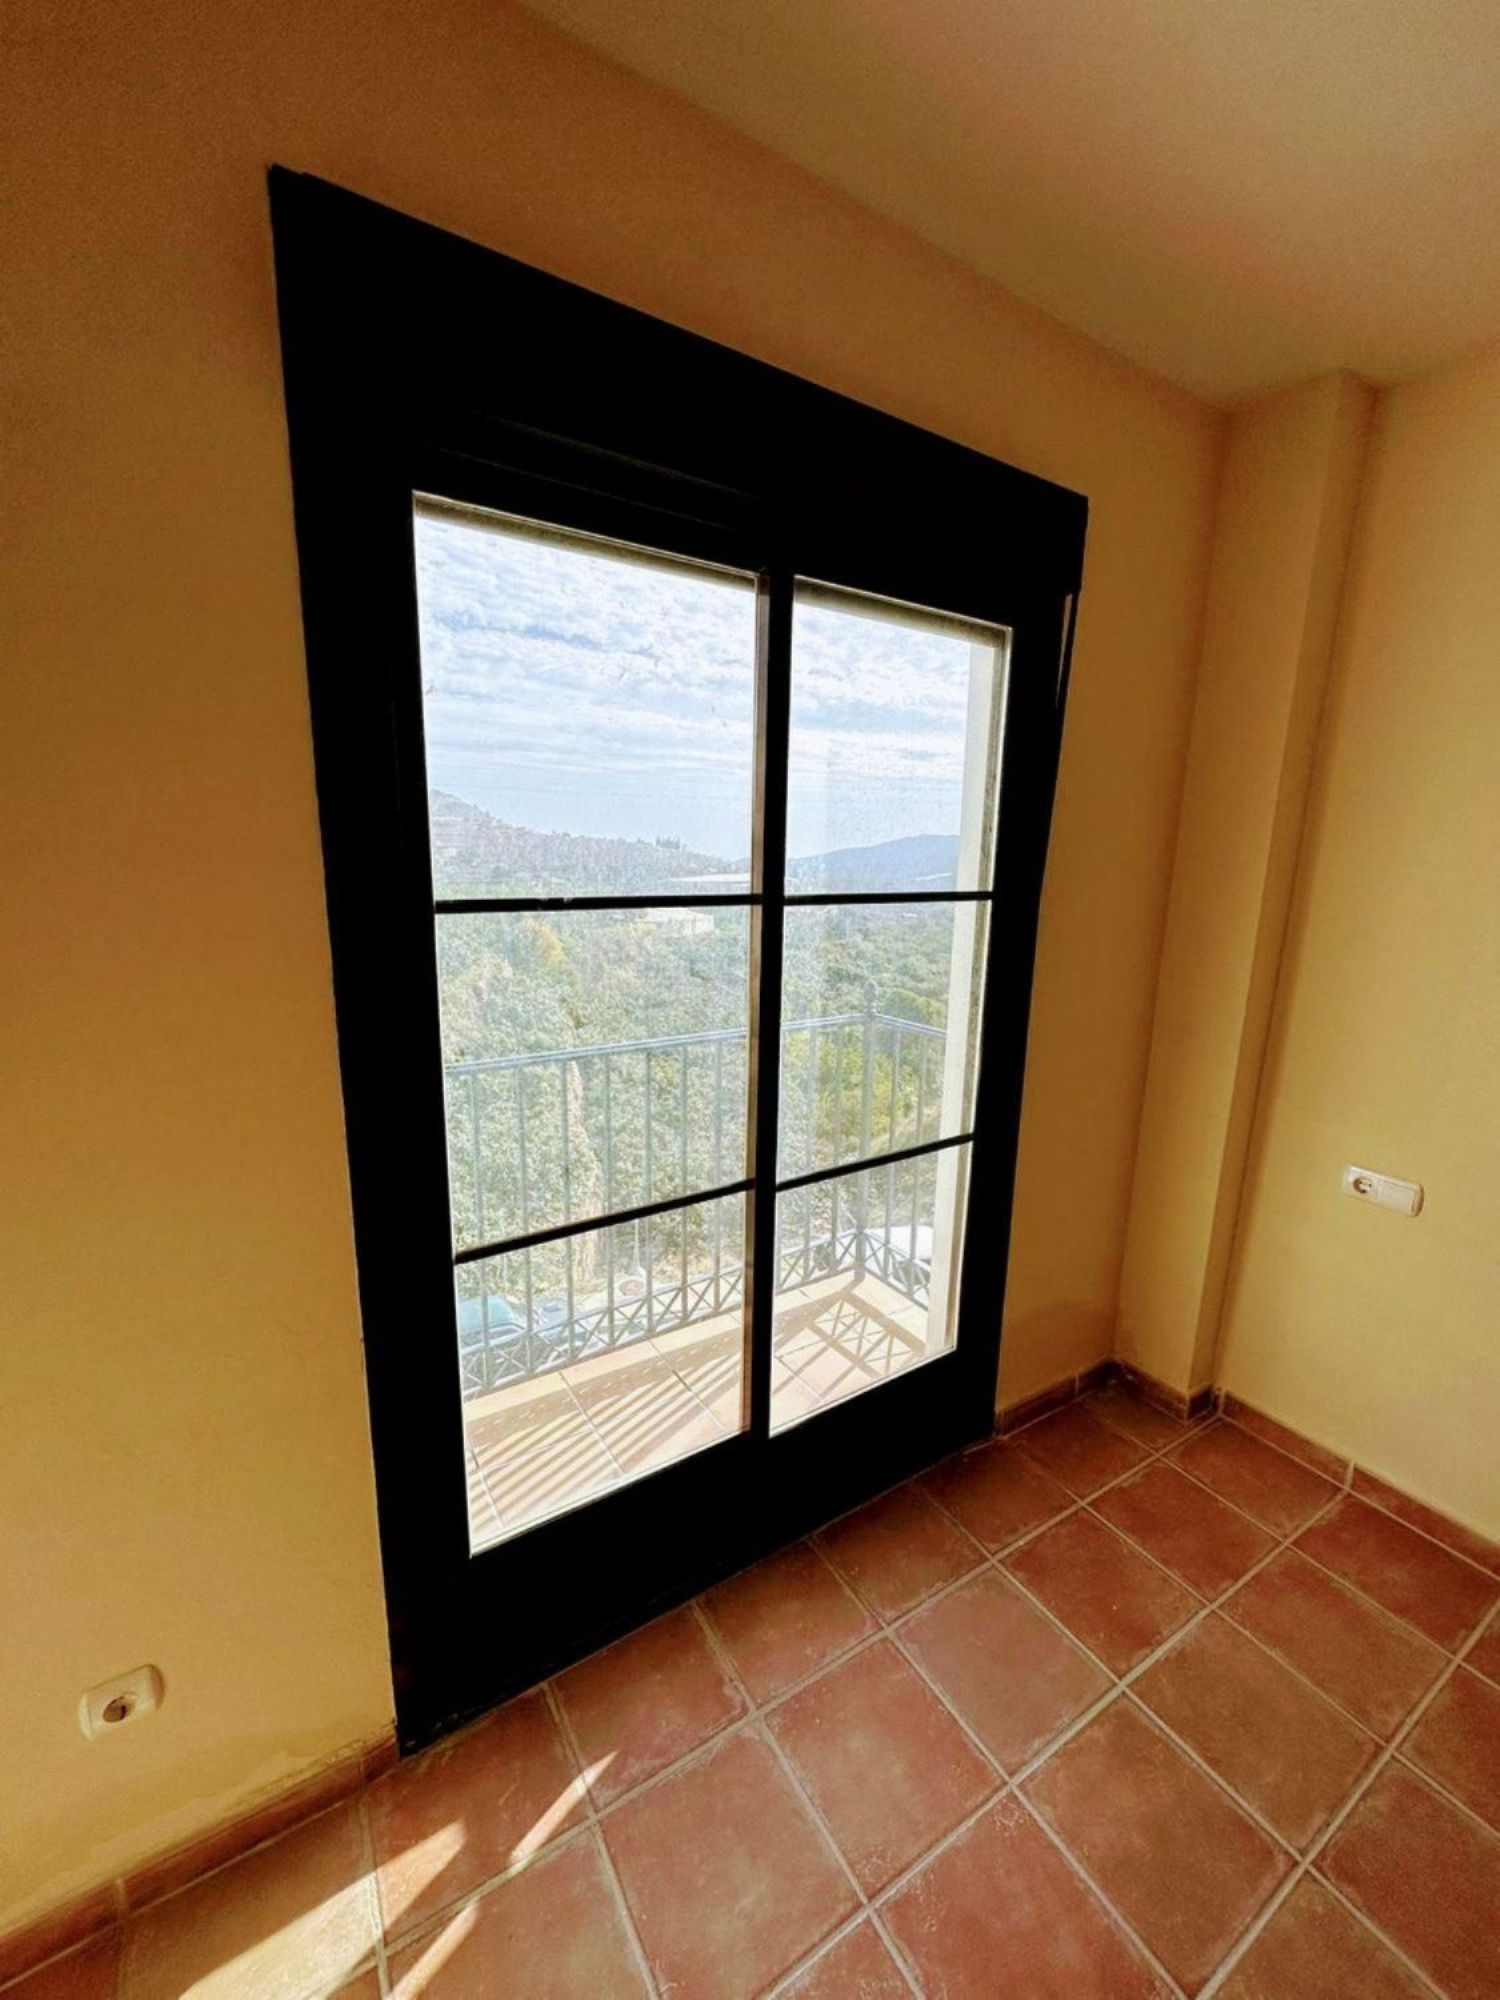 Área de Molvízar, Granada, 2 Bedrooms Bedrooms, ,2 BathroomsBathrooms,Apartment,For Sale